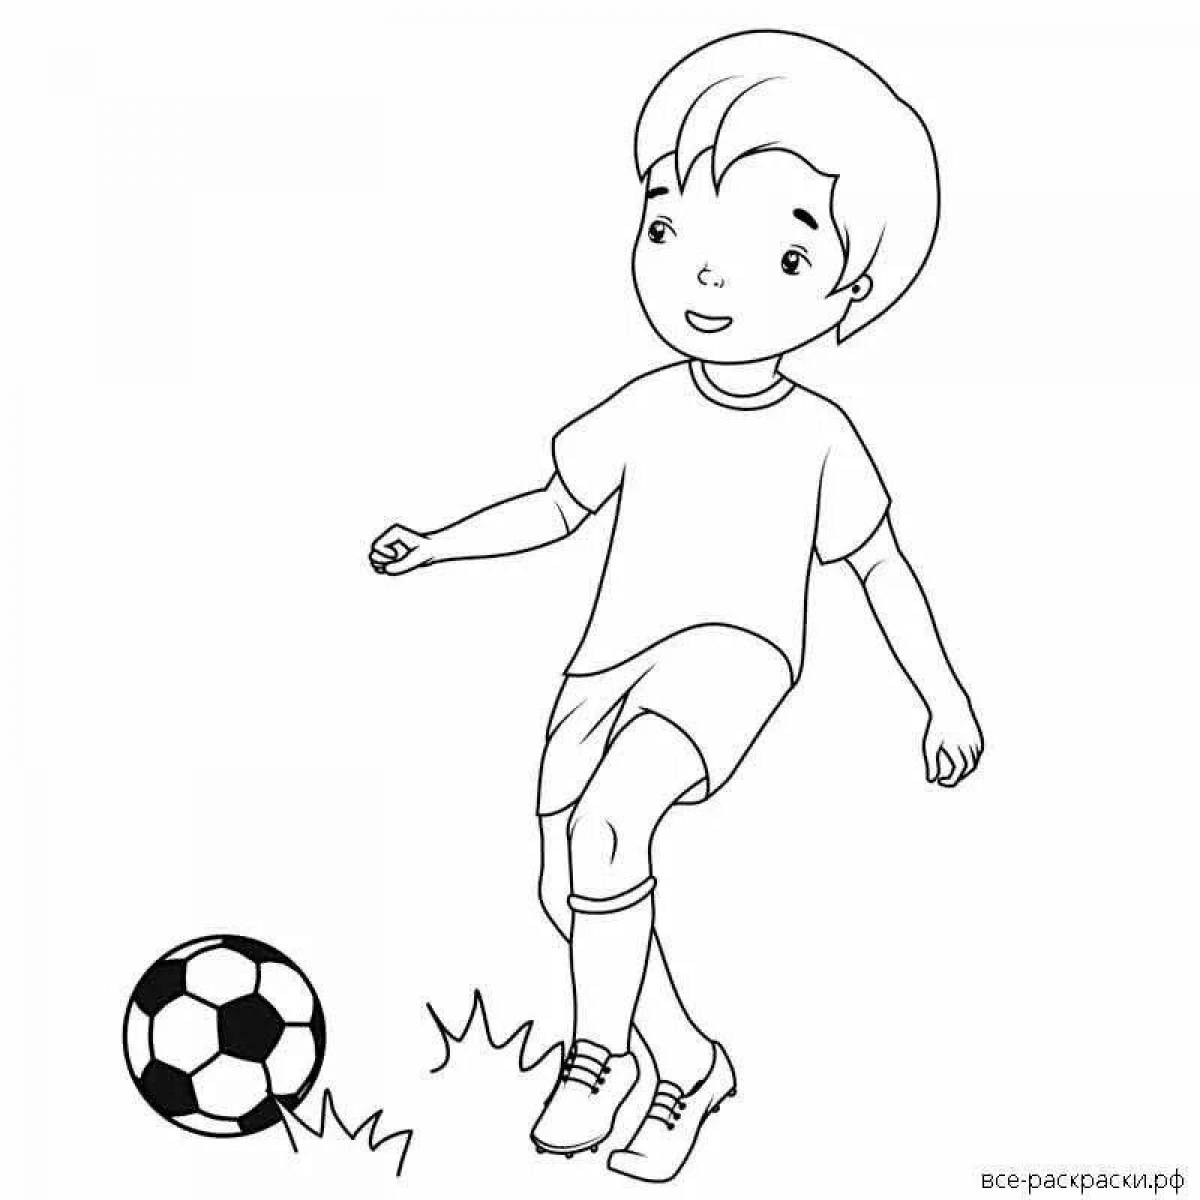 Настойчивый футболист с мячом